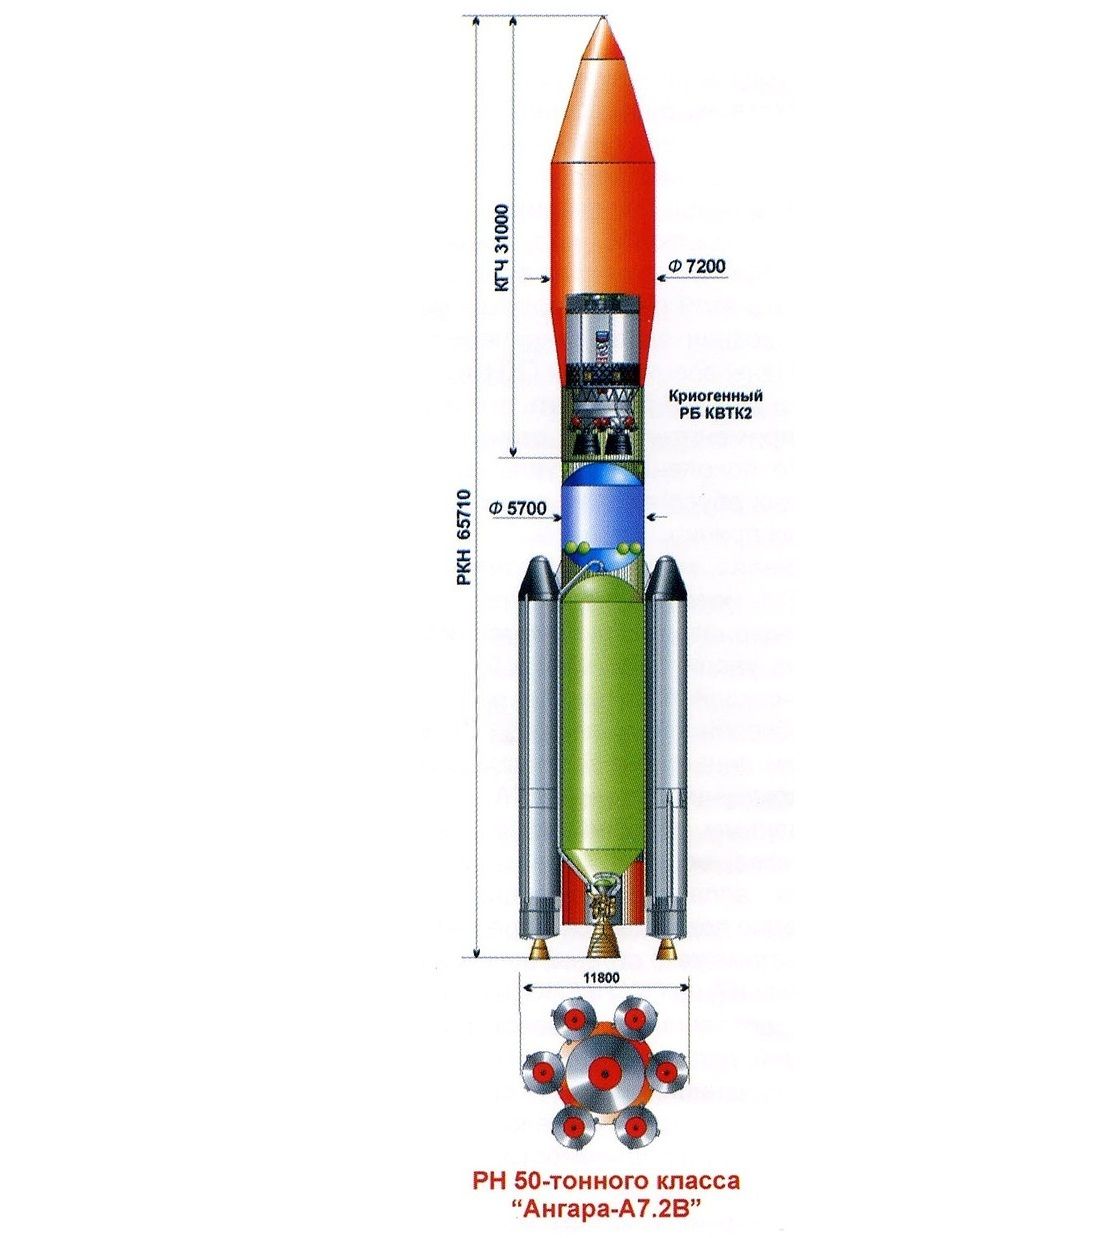 Ангара а5 размеры. Ракета-носитель "Ангара-а5". Головной обтекатель Ангара а5. Ангара а5 с КВТК. Союз 2.1 Протон-м Ангара-а5.